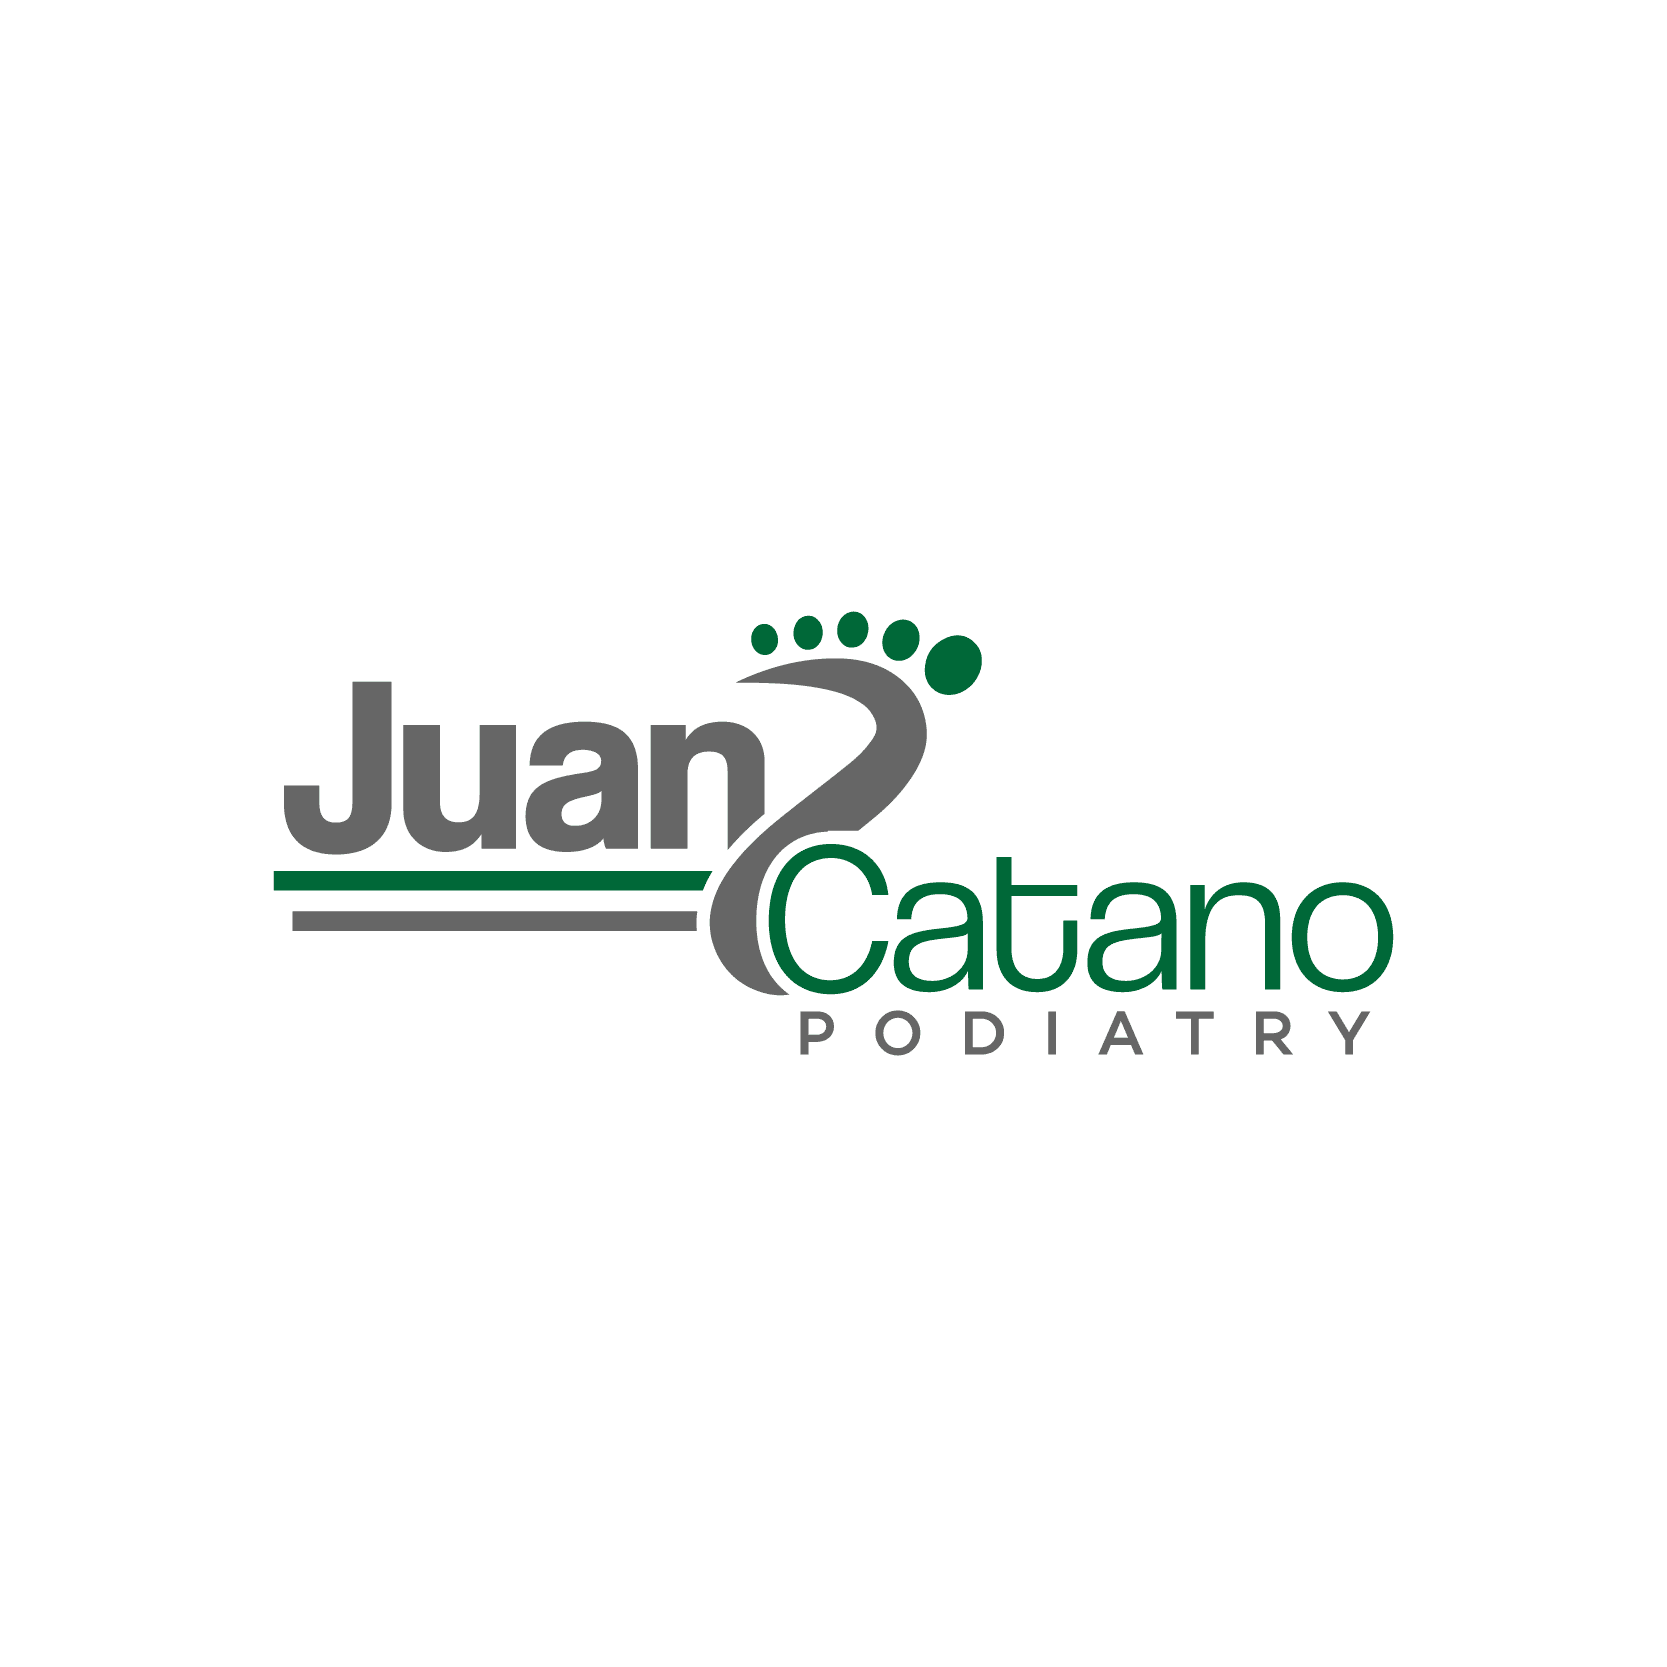 Juan Catano Podiatry